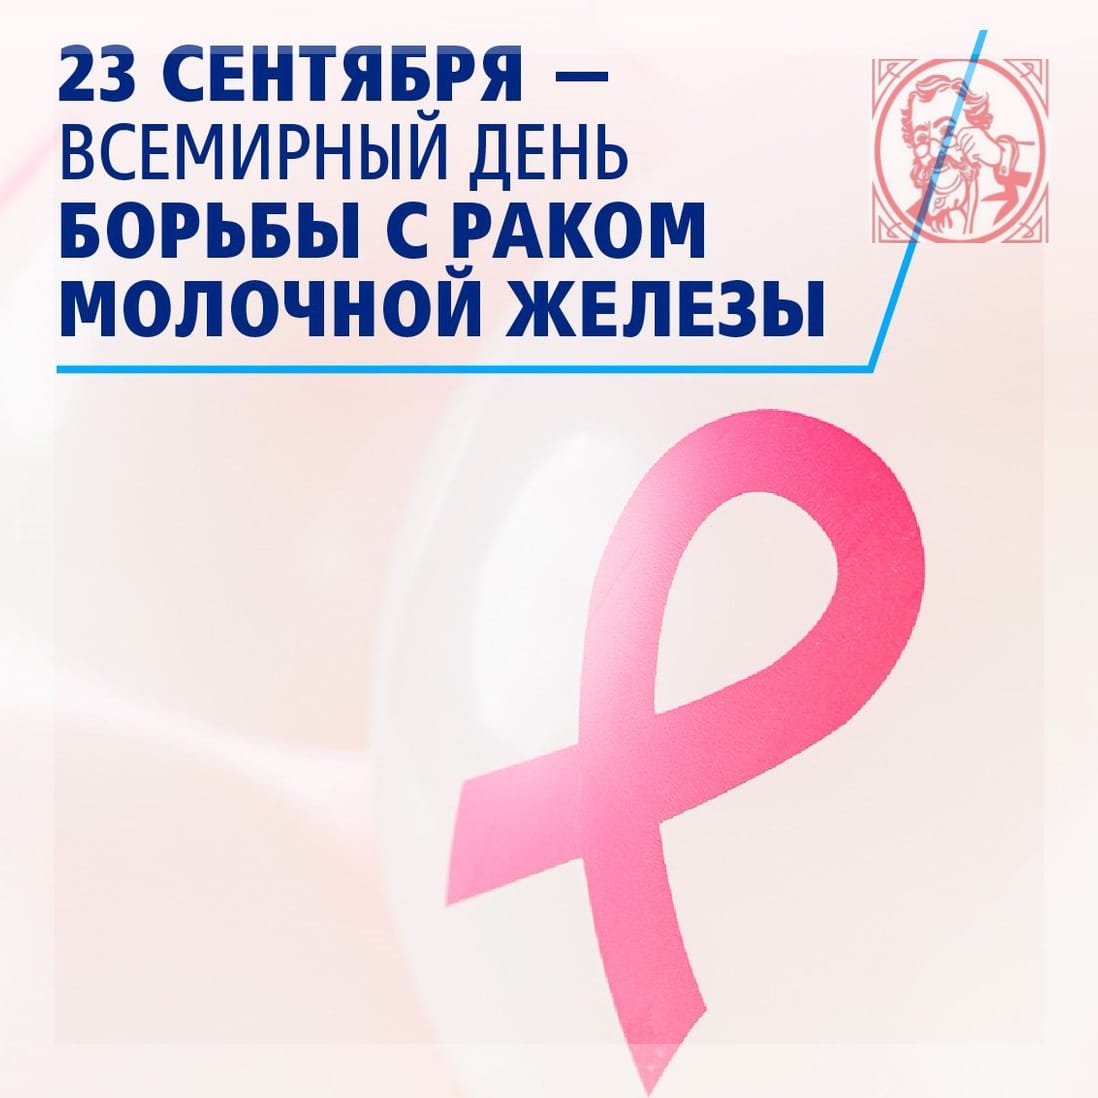 23 сентября - Всемирный день борьбы с раком молочной железы.